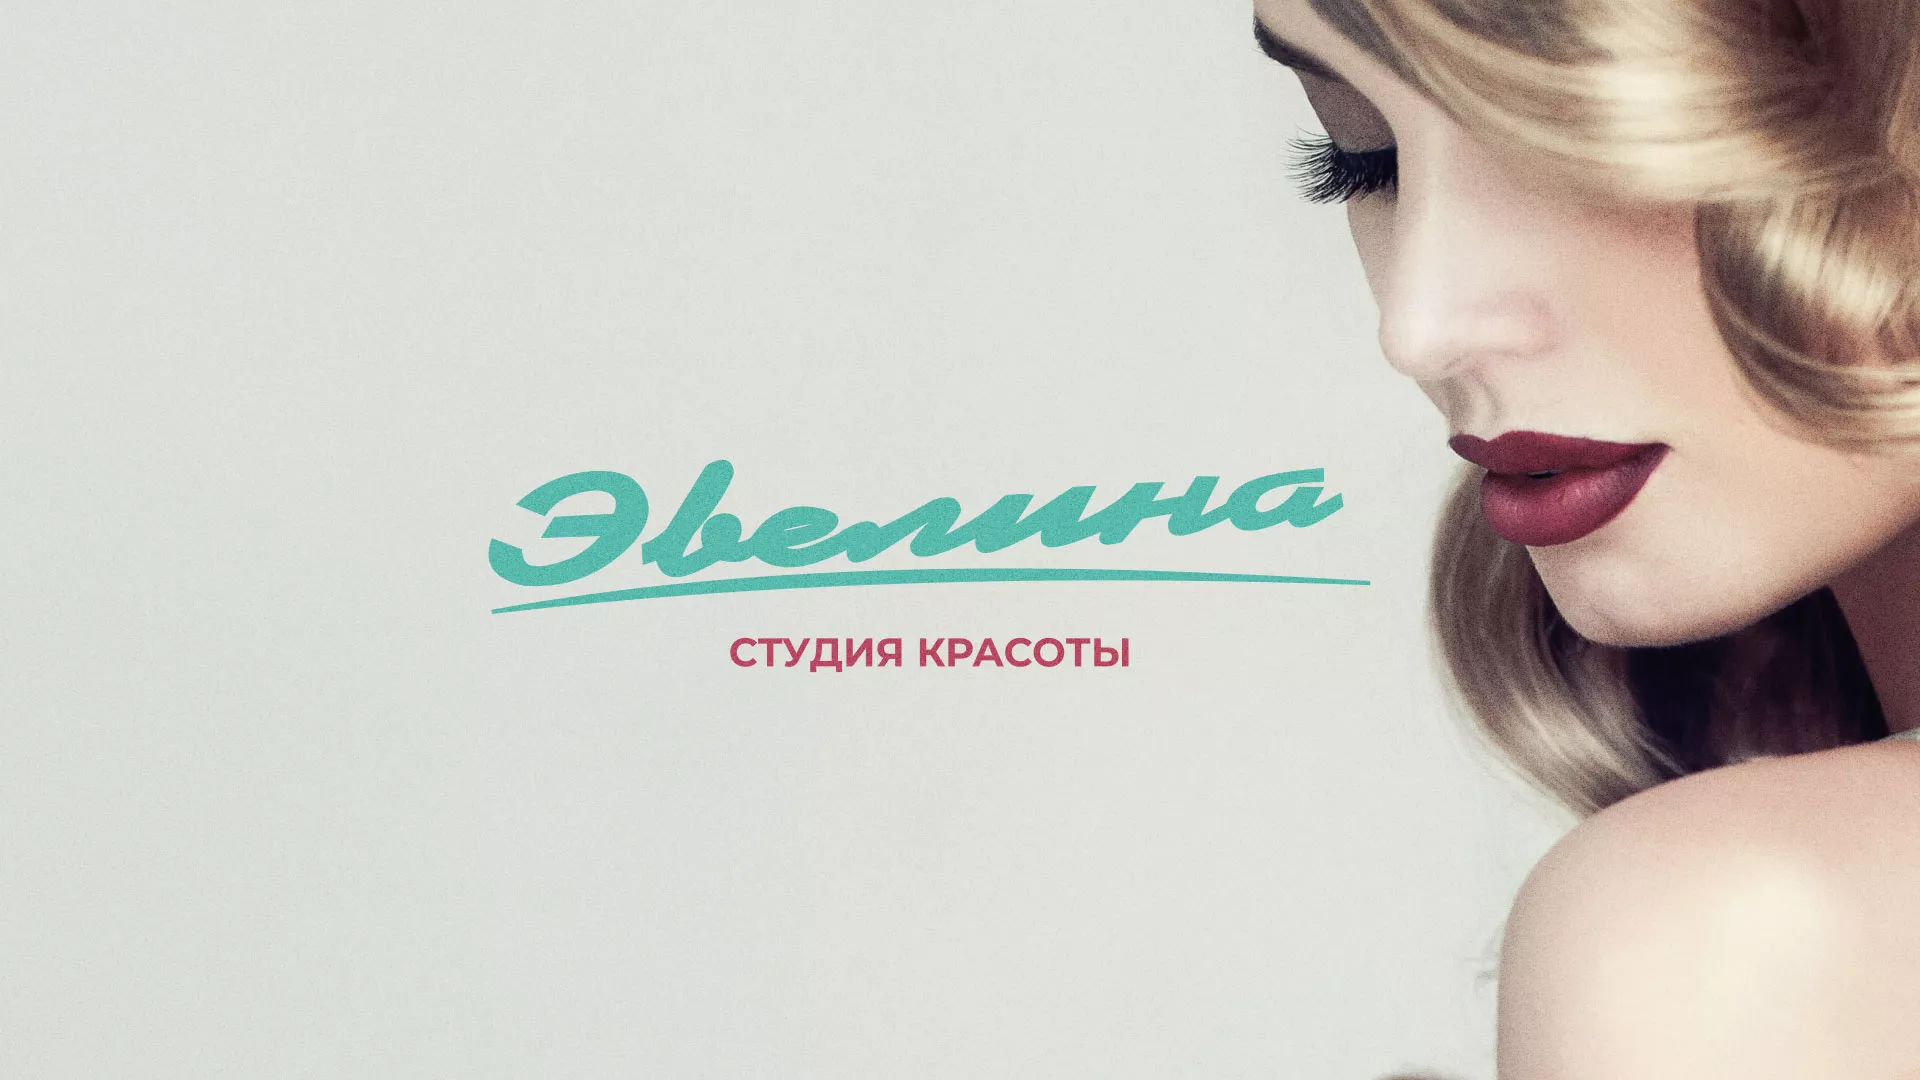 Разработка сайта для салона красоты «Эвелина» в Новосибирске